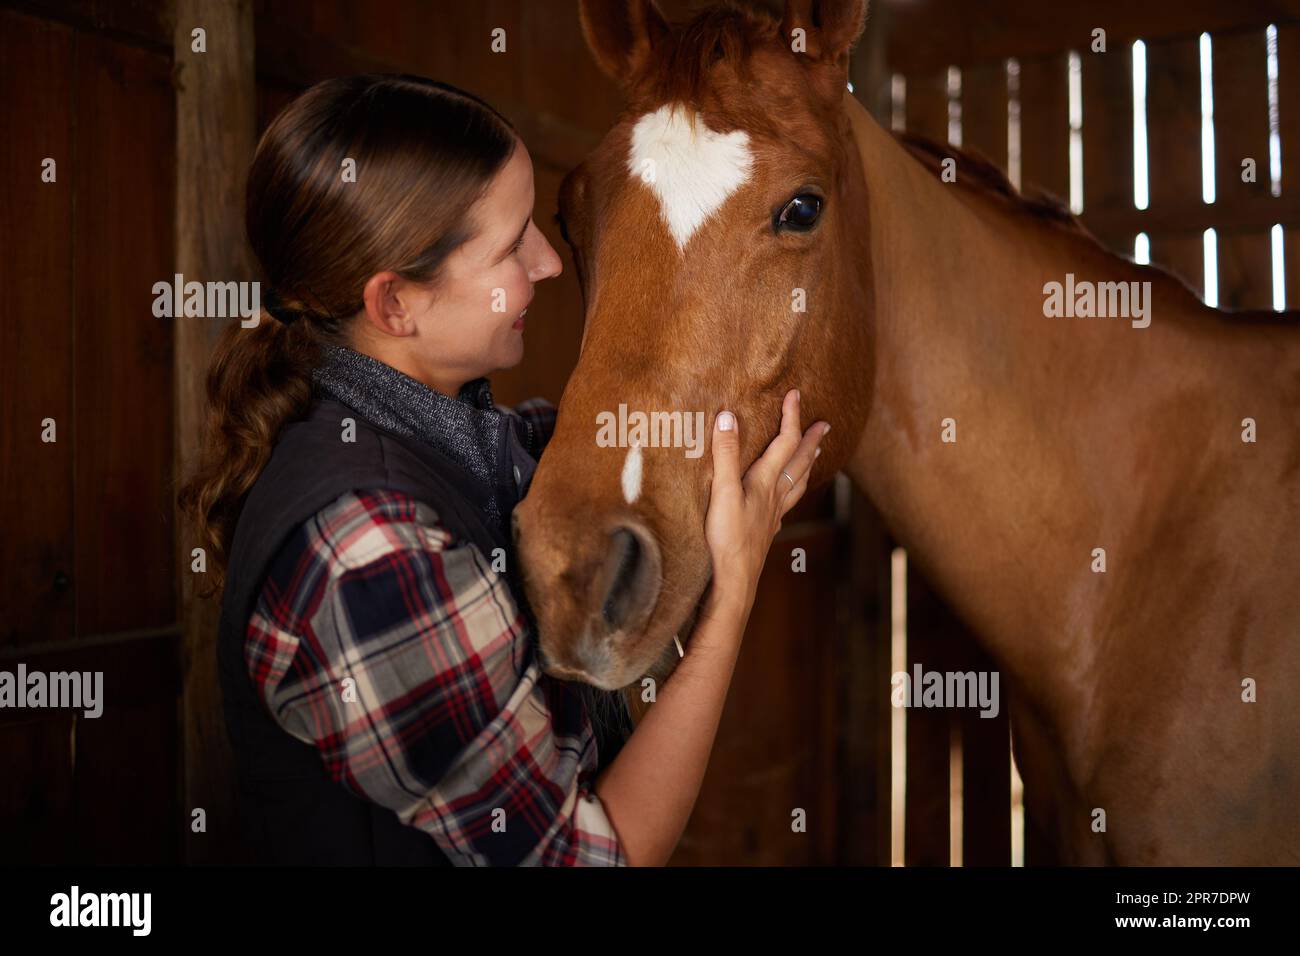 Les chevaux font un paysage magnifique. Une jeune femme petant un cheval dans une grange. Banque D'Images